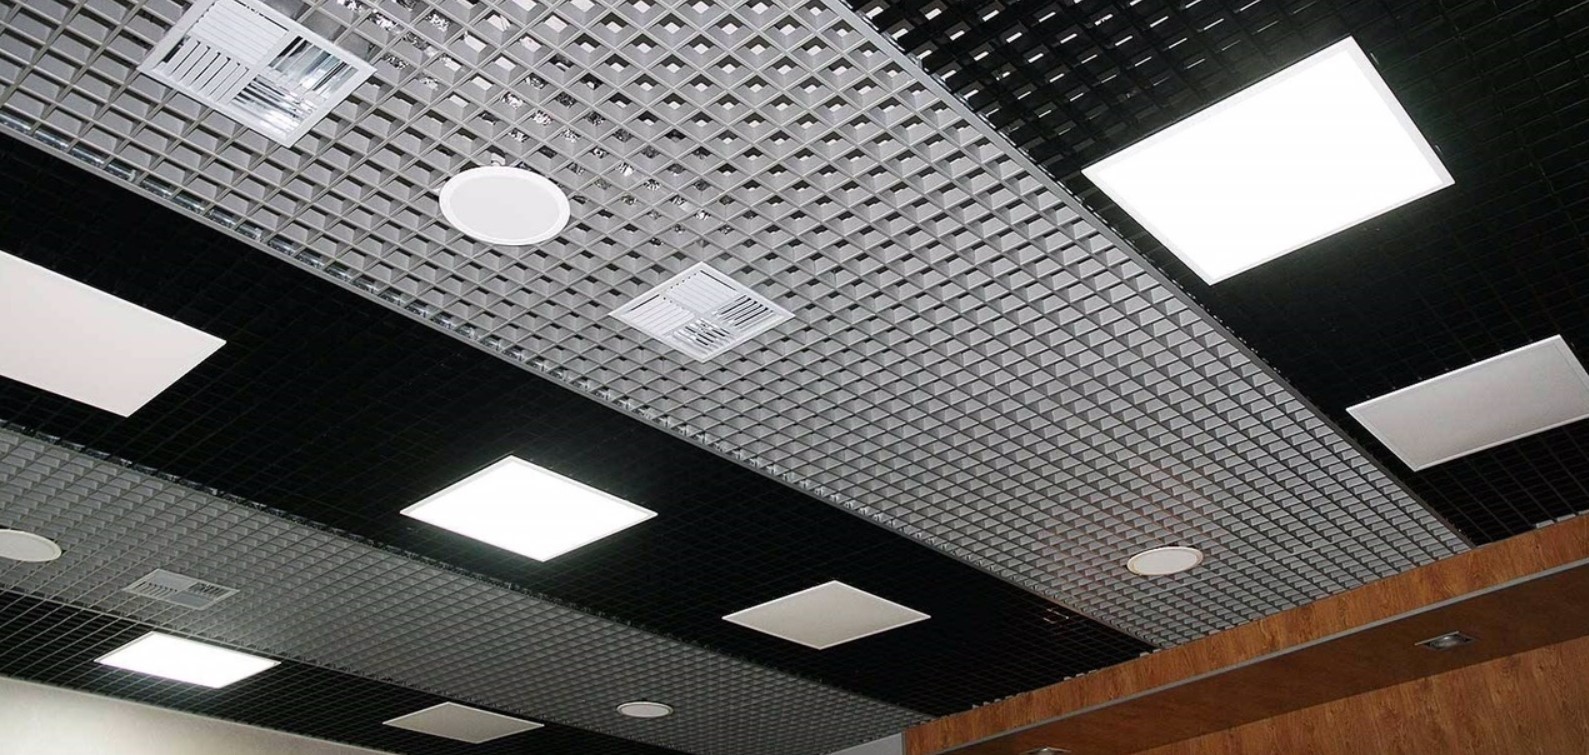 Как сделать световые линии на потолке и стенах?